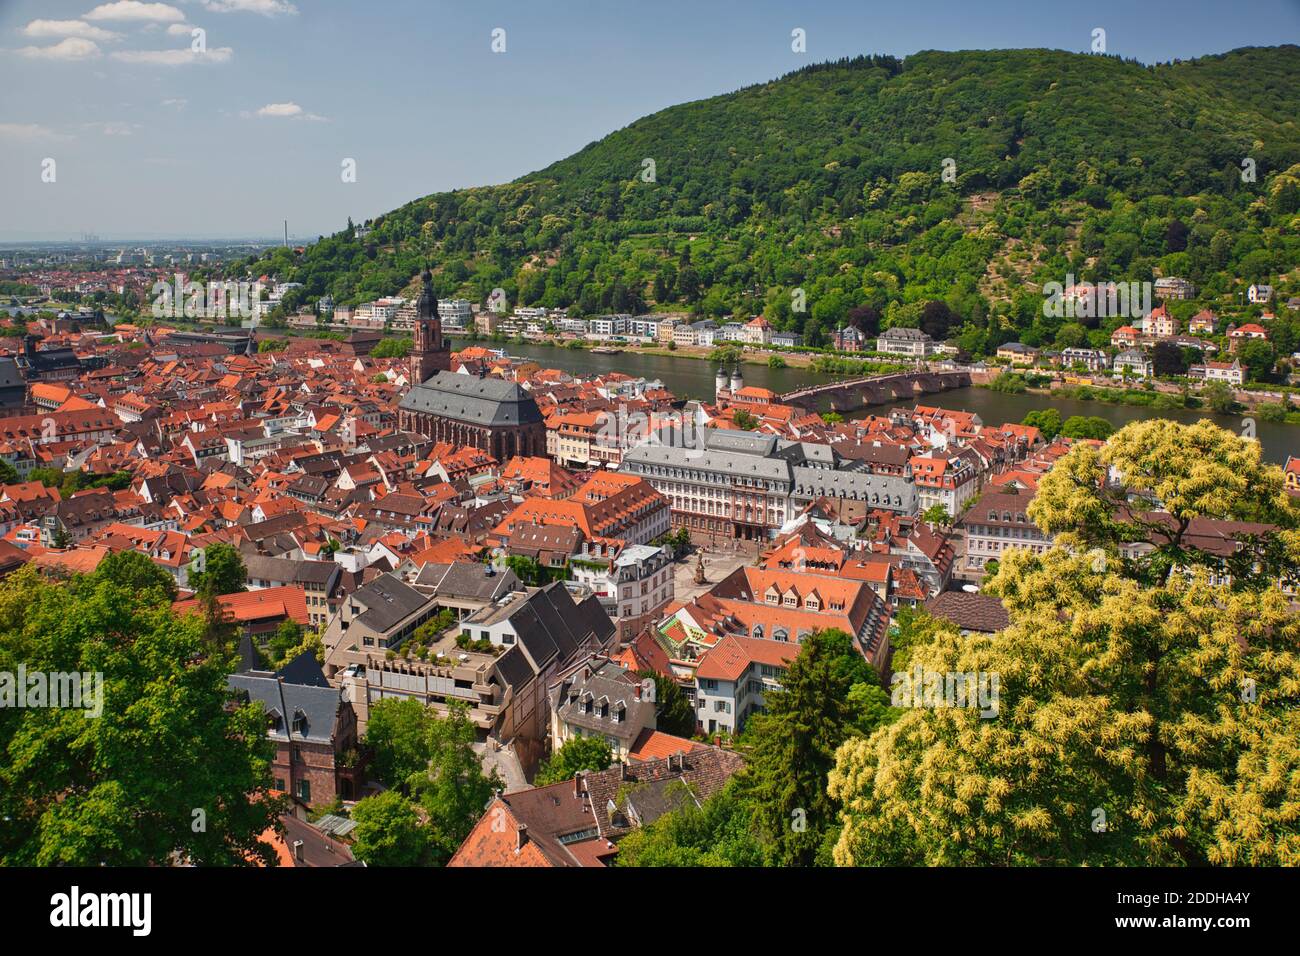 Una vista aerea dal vecchio castello del centro di Heidelberg nello stato di Baden-Württemberg, in Germania, che mostra edifici e tetti rossi dall'alto Foto Stock